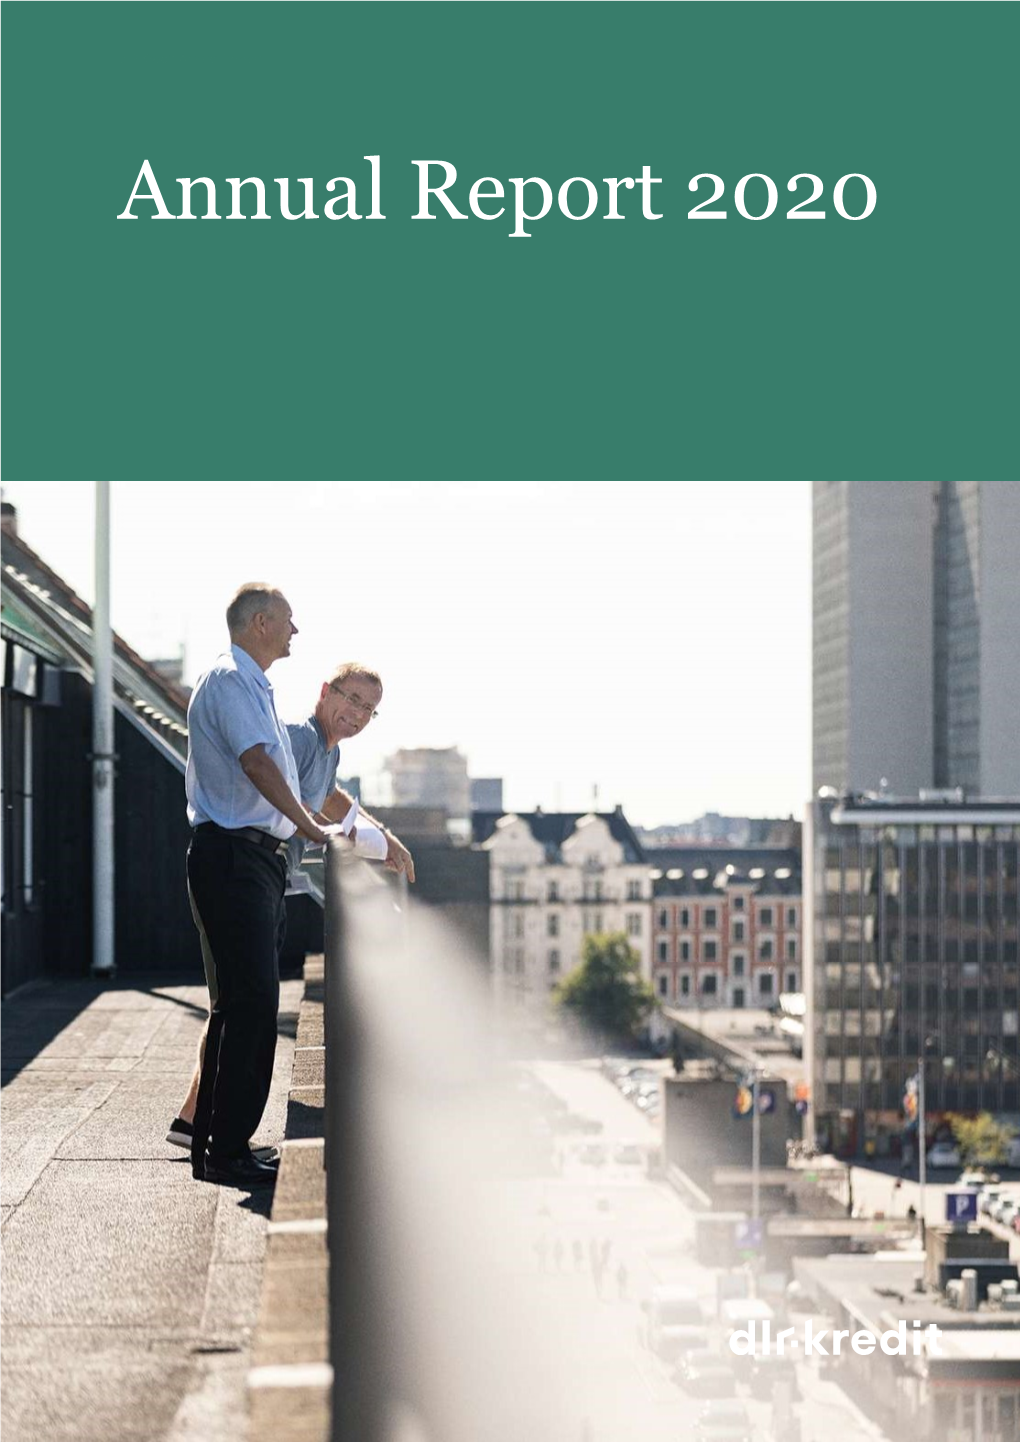 DLR-Kredit-Annual-Report-2020.Pdf